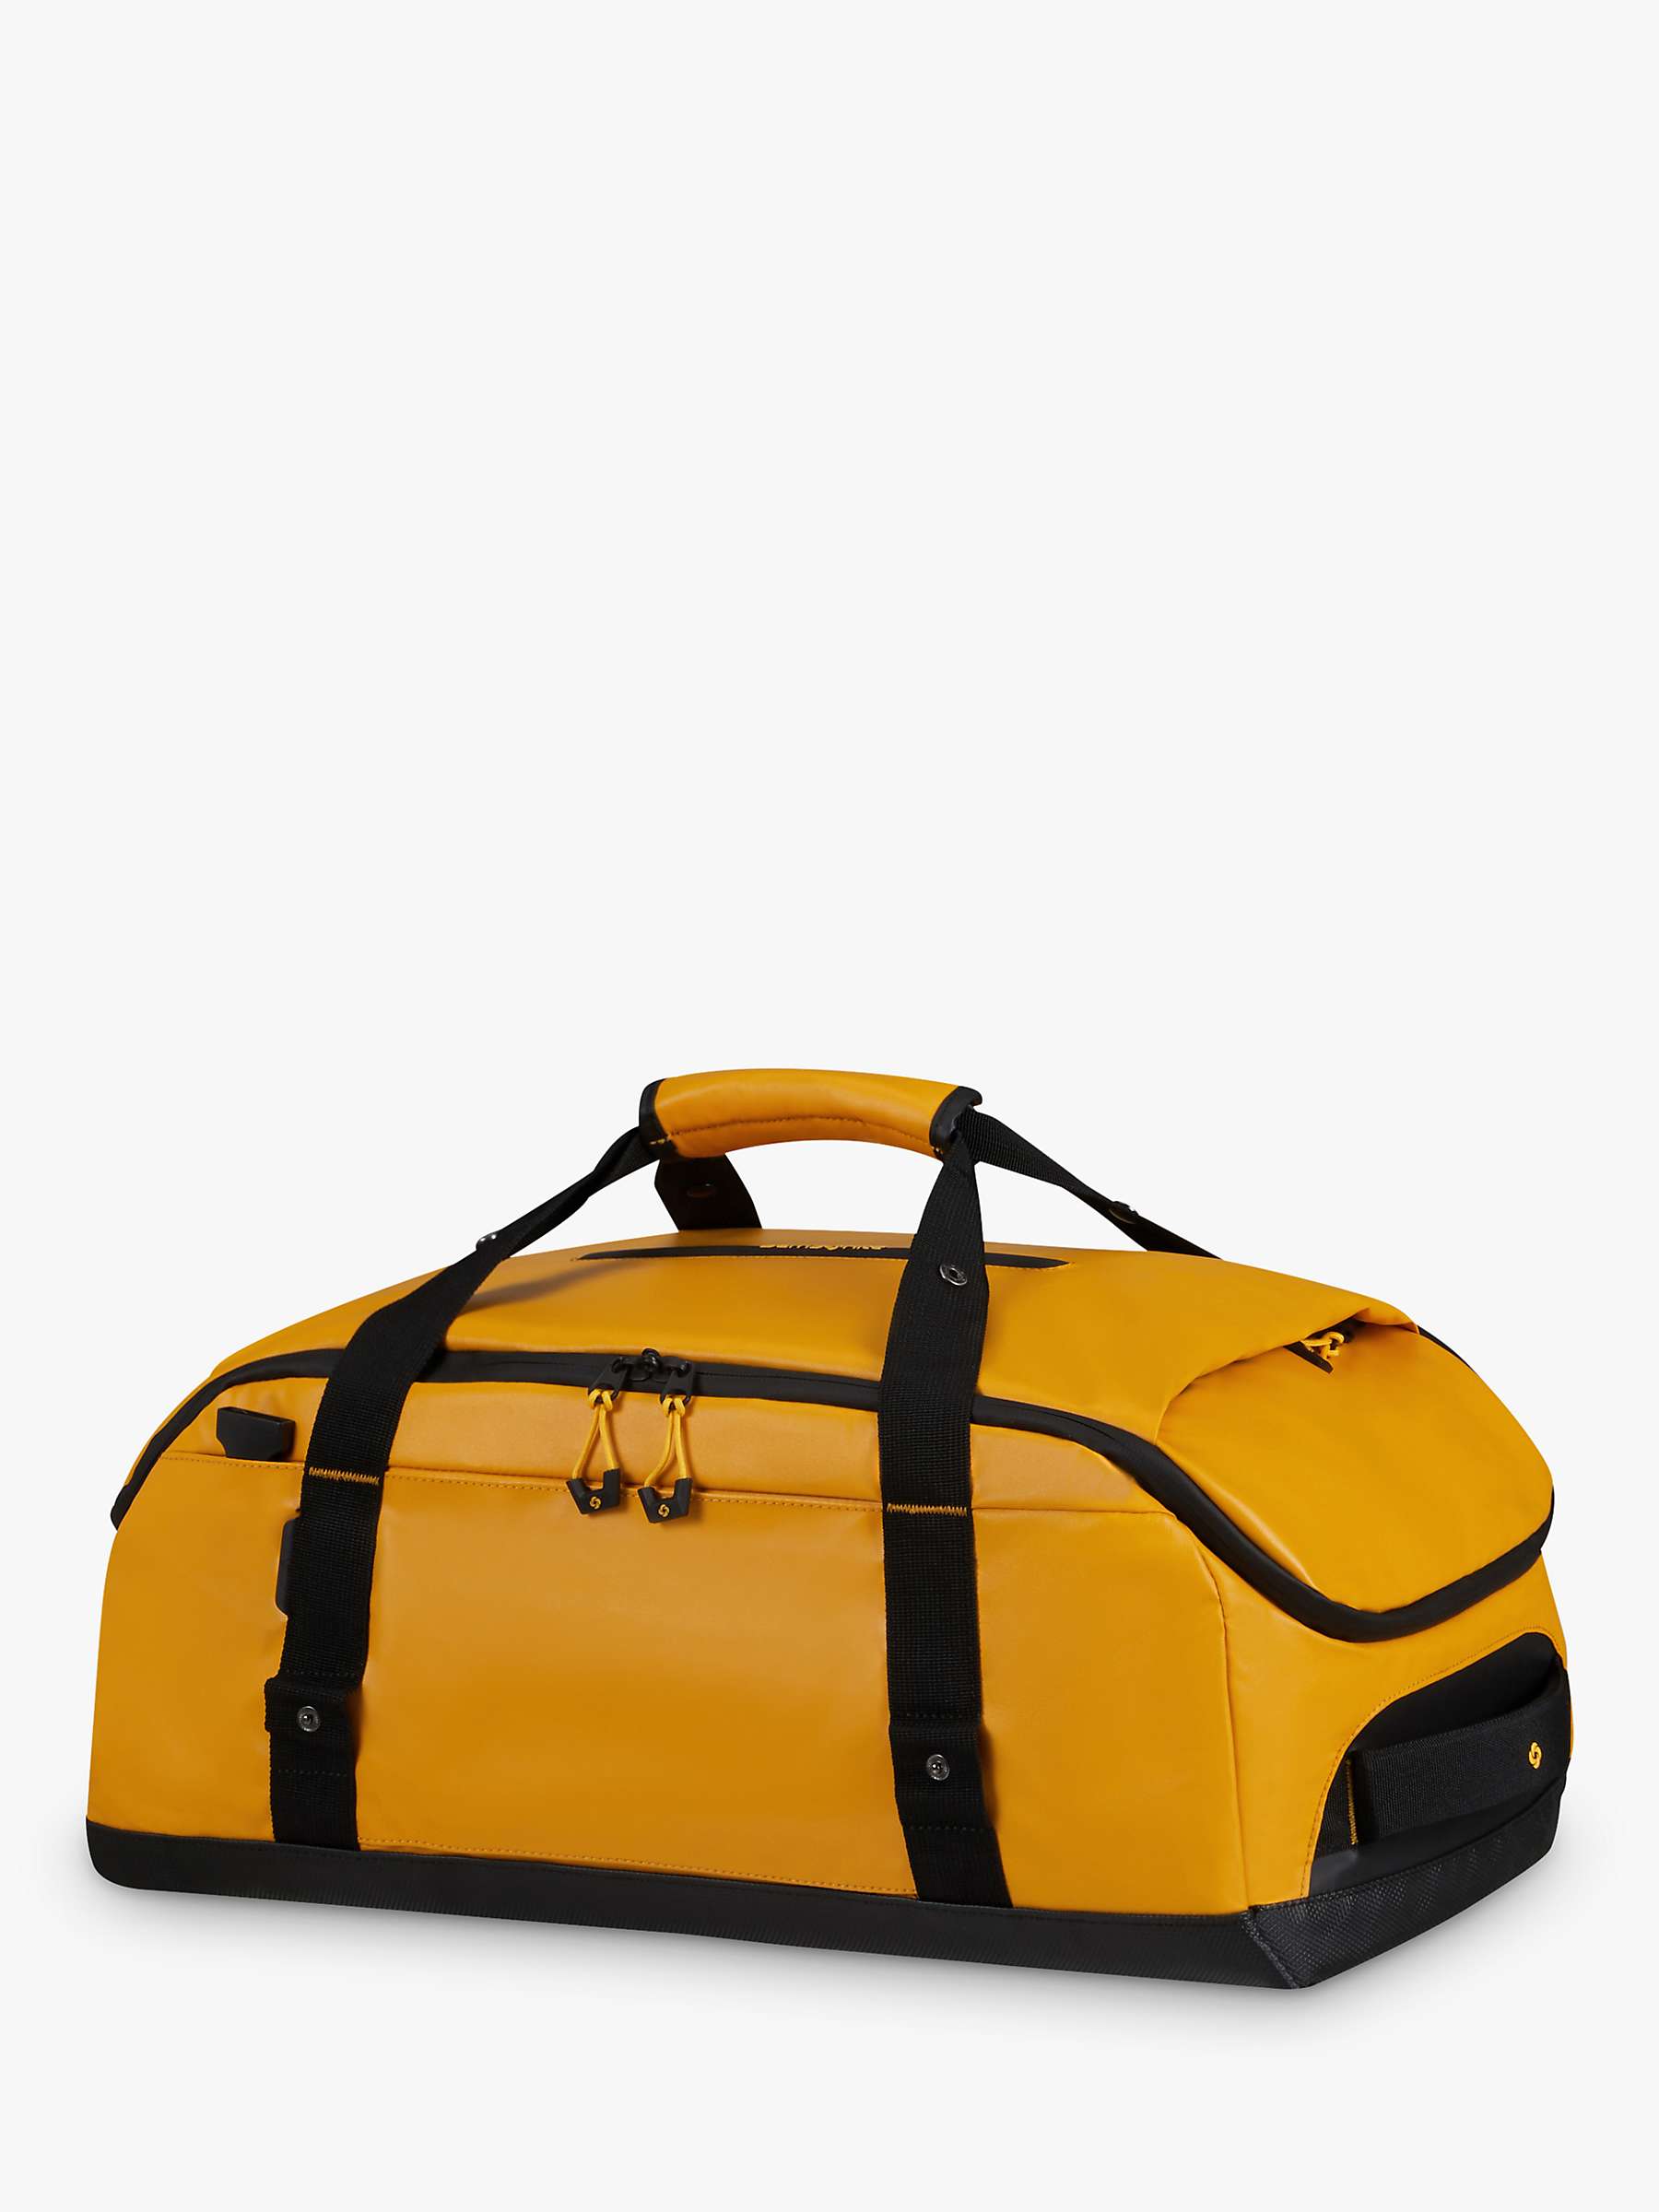 Buy Samsonite Ecodiver Duffle Bag, Yellow Online at johnlewis.com